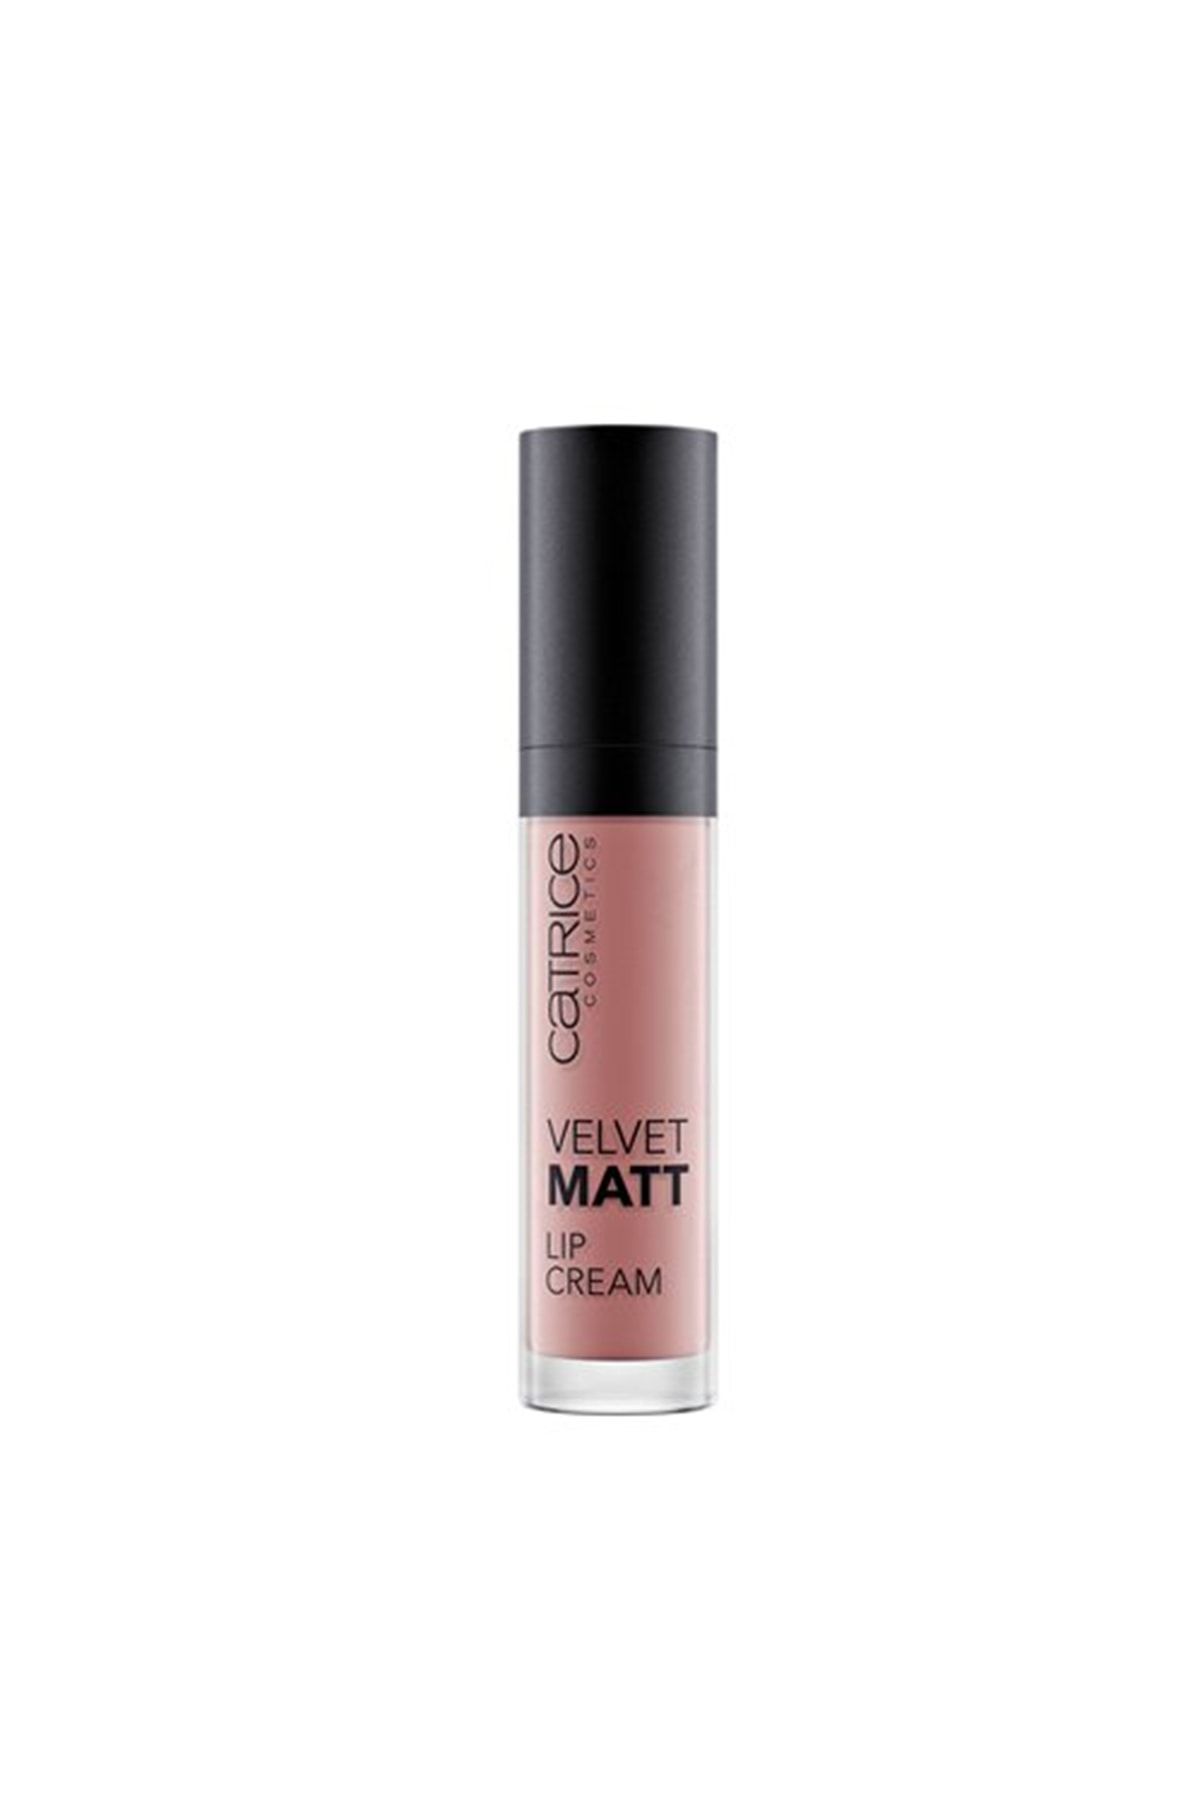 Catrice Velvet Matt Lip Cream 150 Nude Is Back! 3.4ml